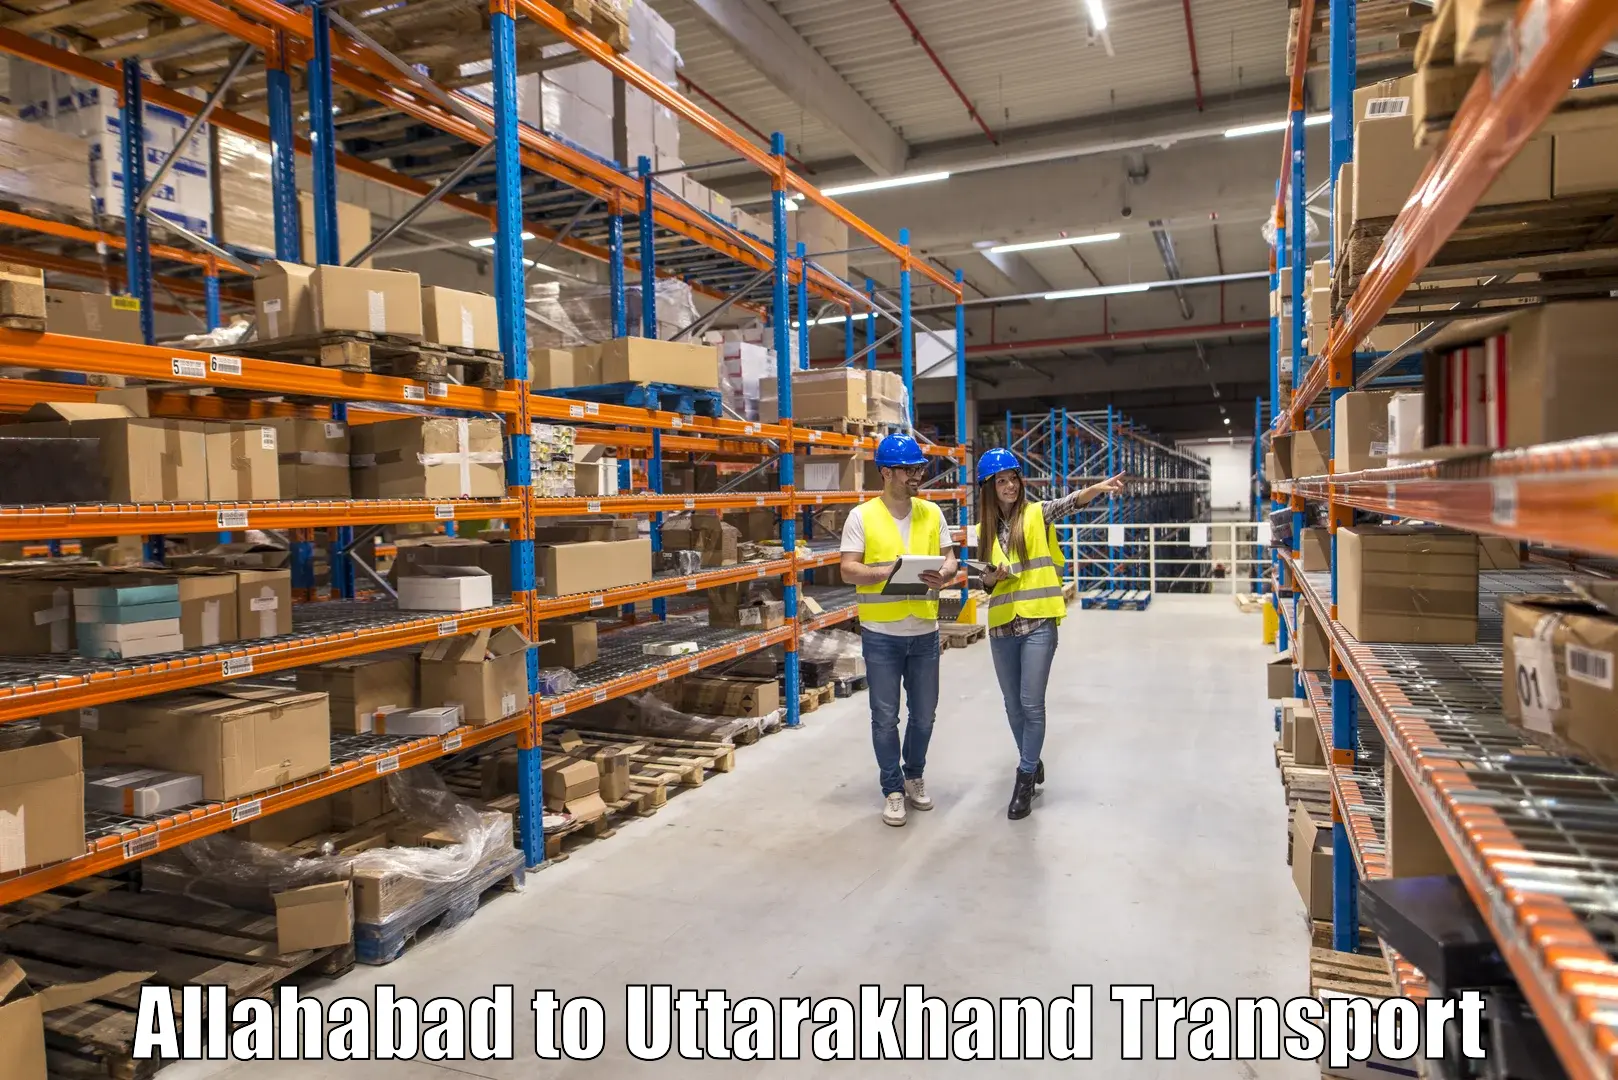 Daily transport service Allahabad to Nainital